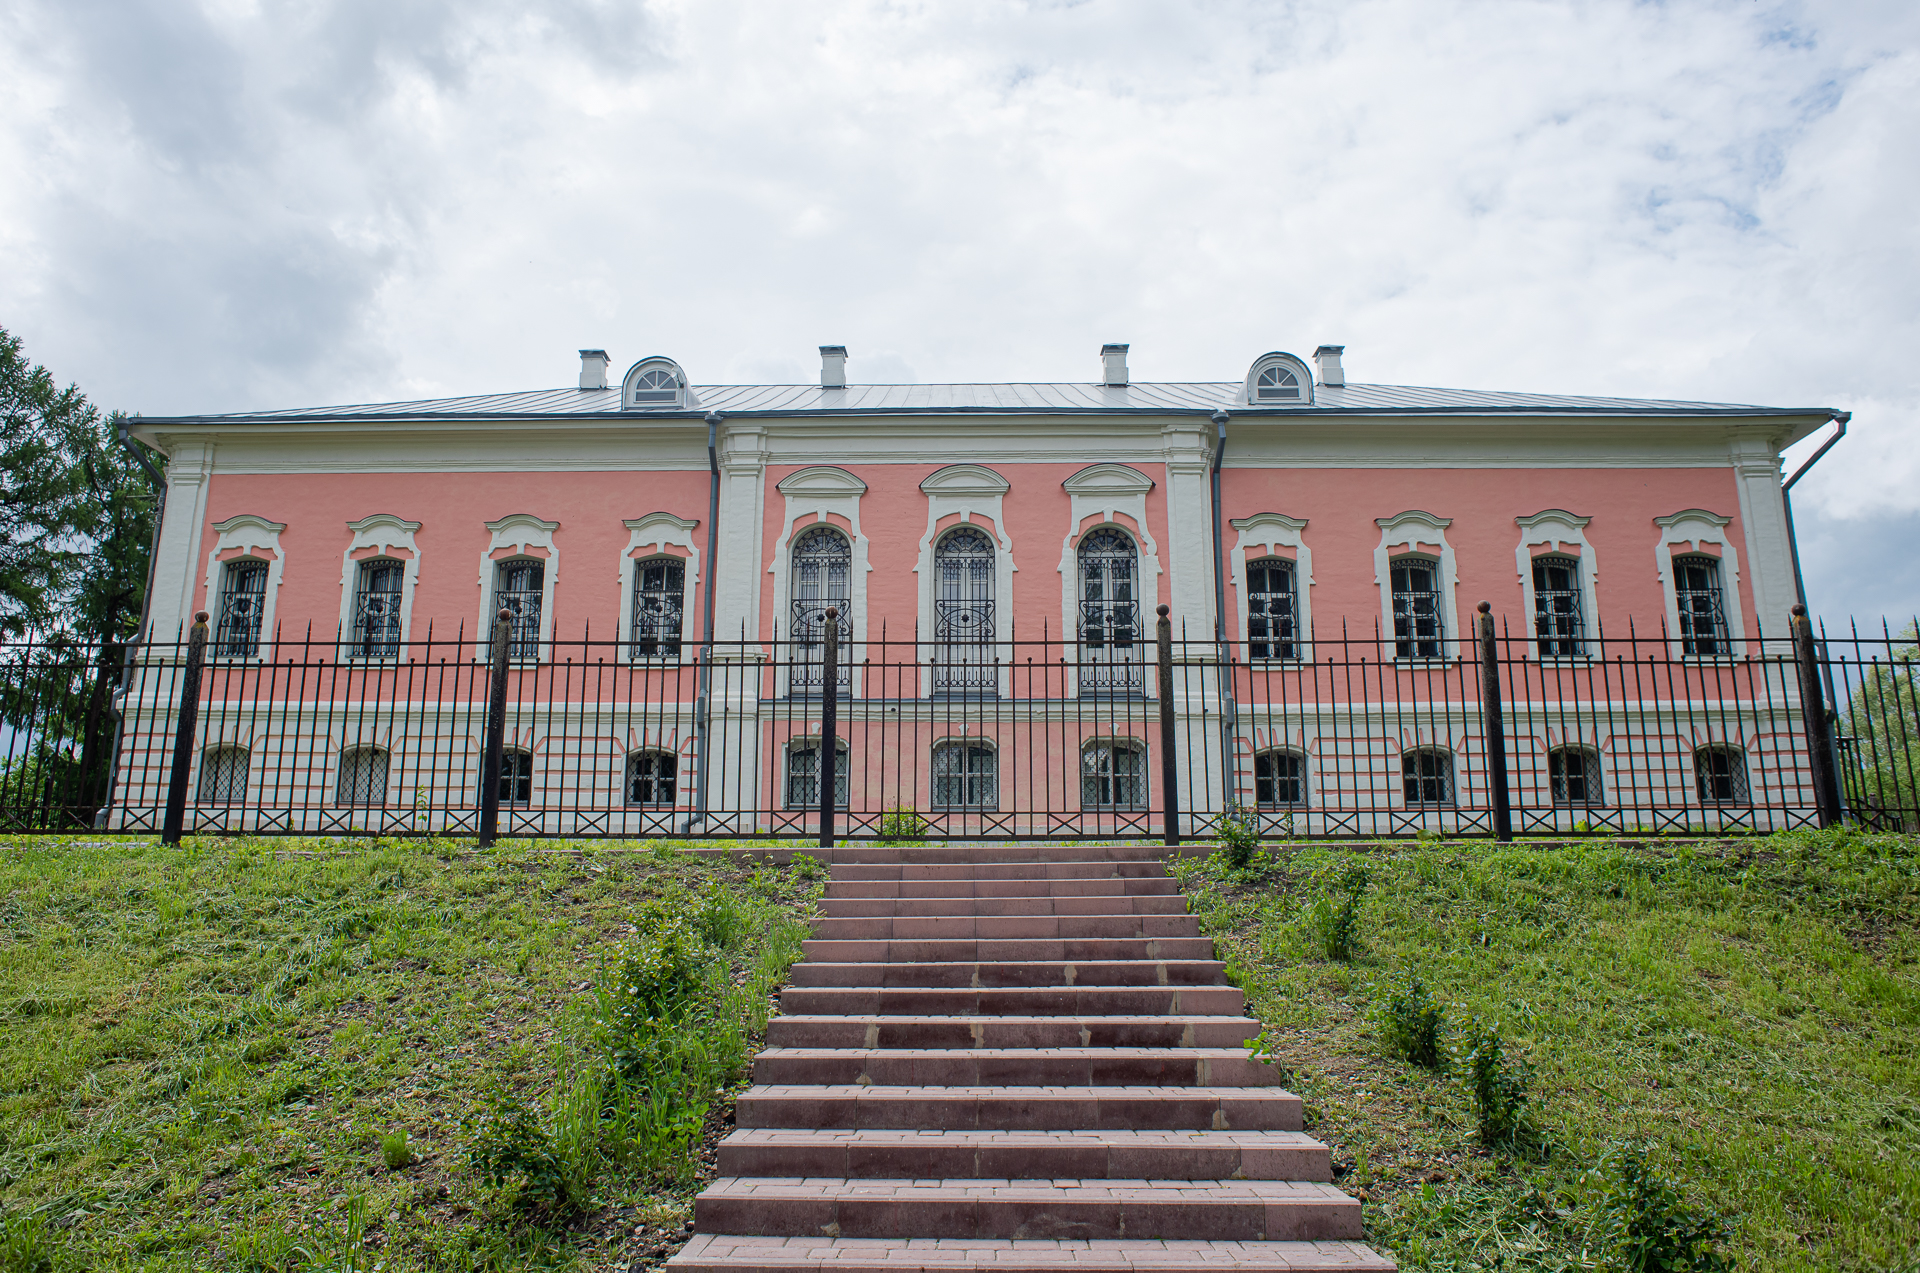 Строительство усадебного дома началось в 1770-х годах по инициативе одного из фаворитов Екатерины II — Александра Васильчикова